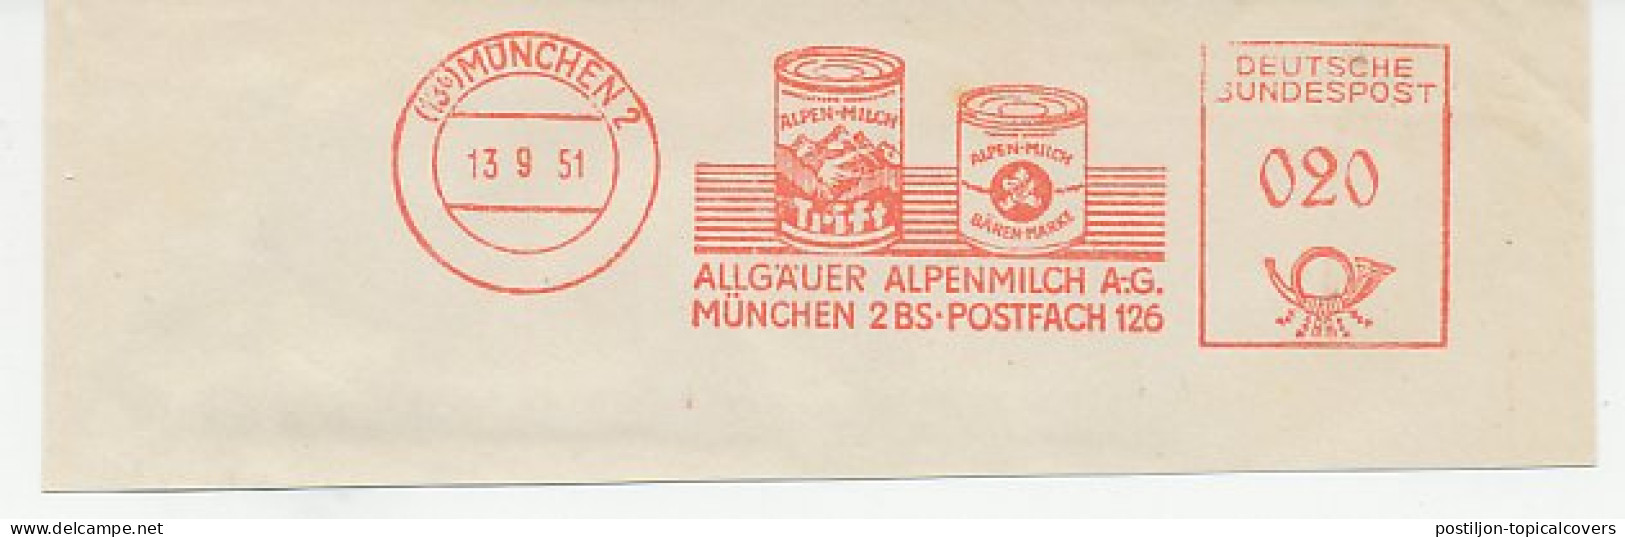 Meter Cut Germany 1951 Alpine Milk - Food